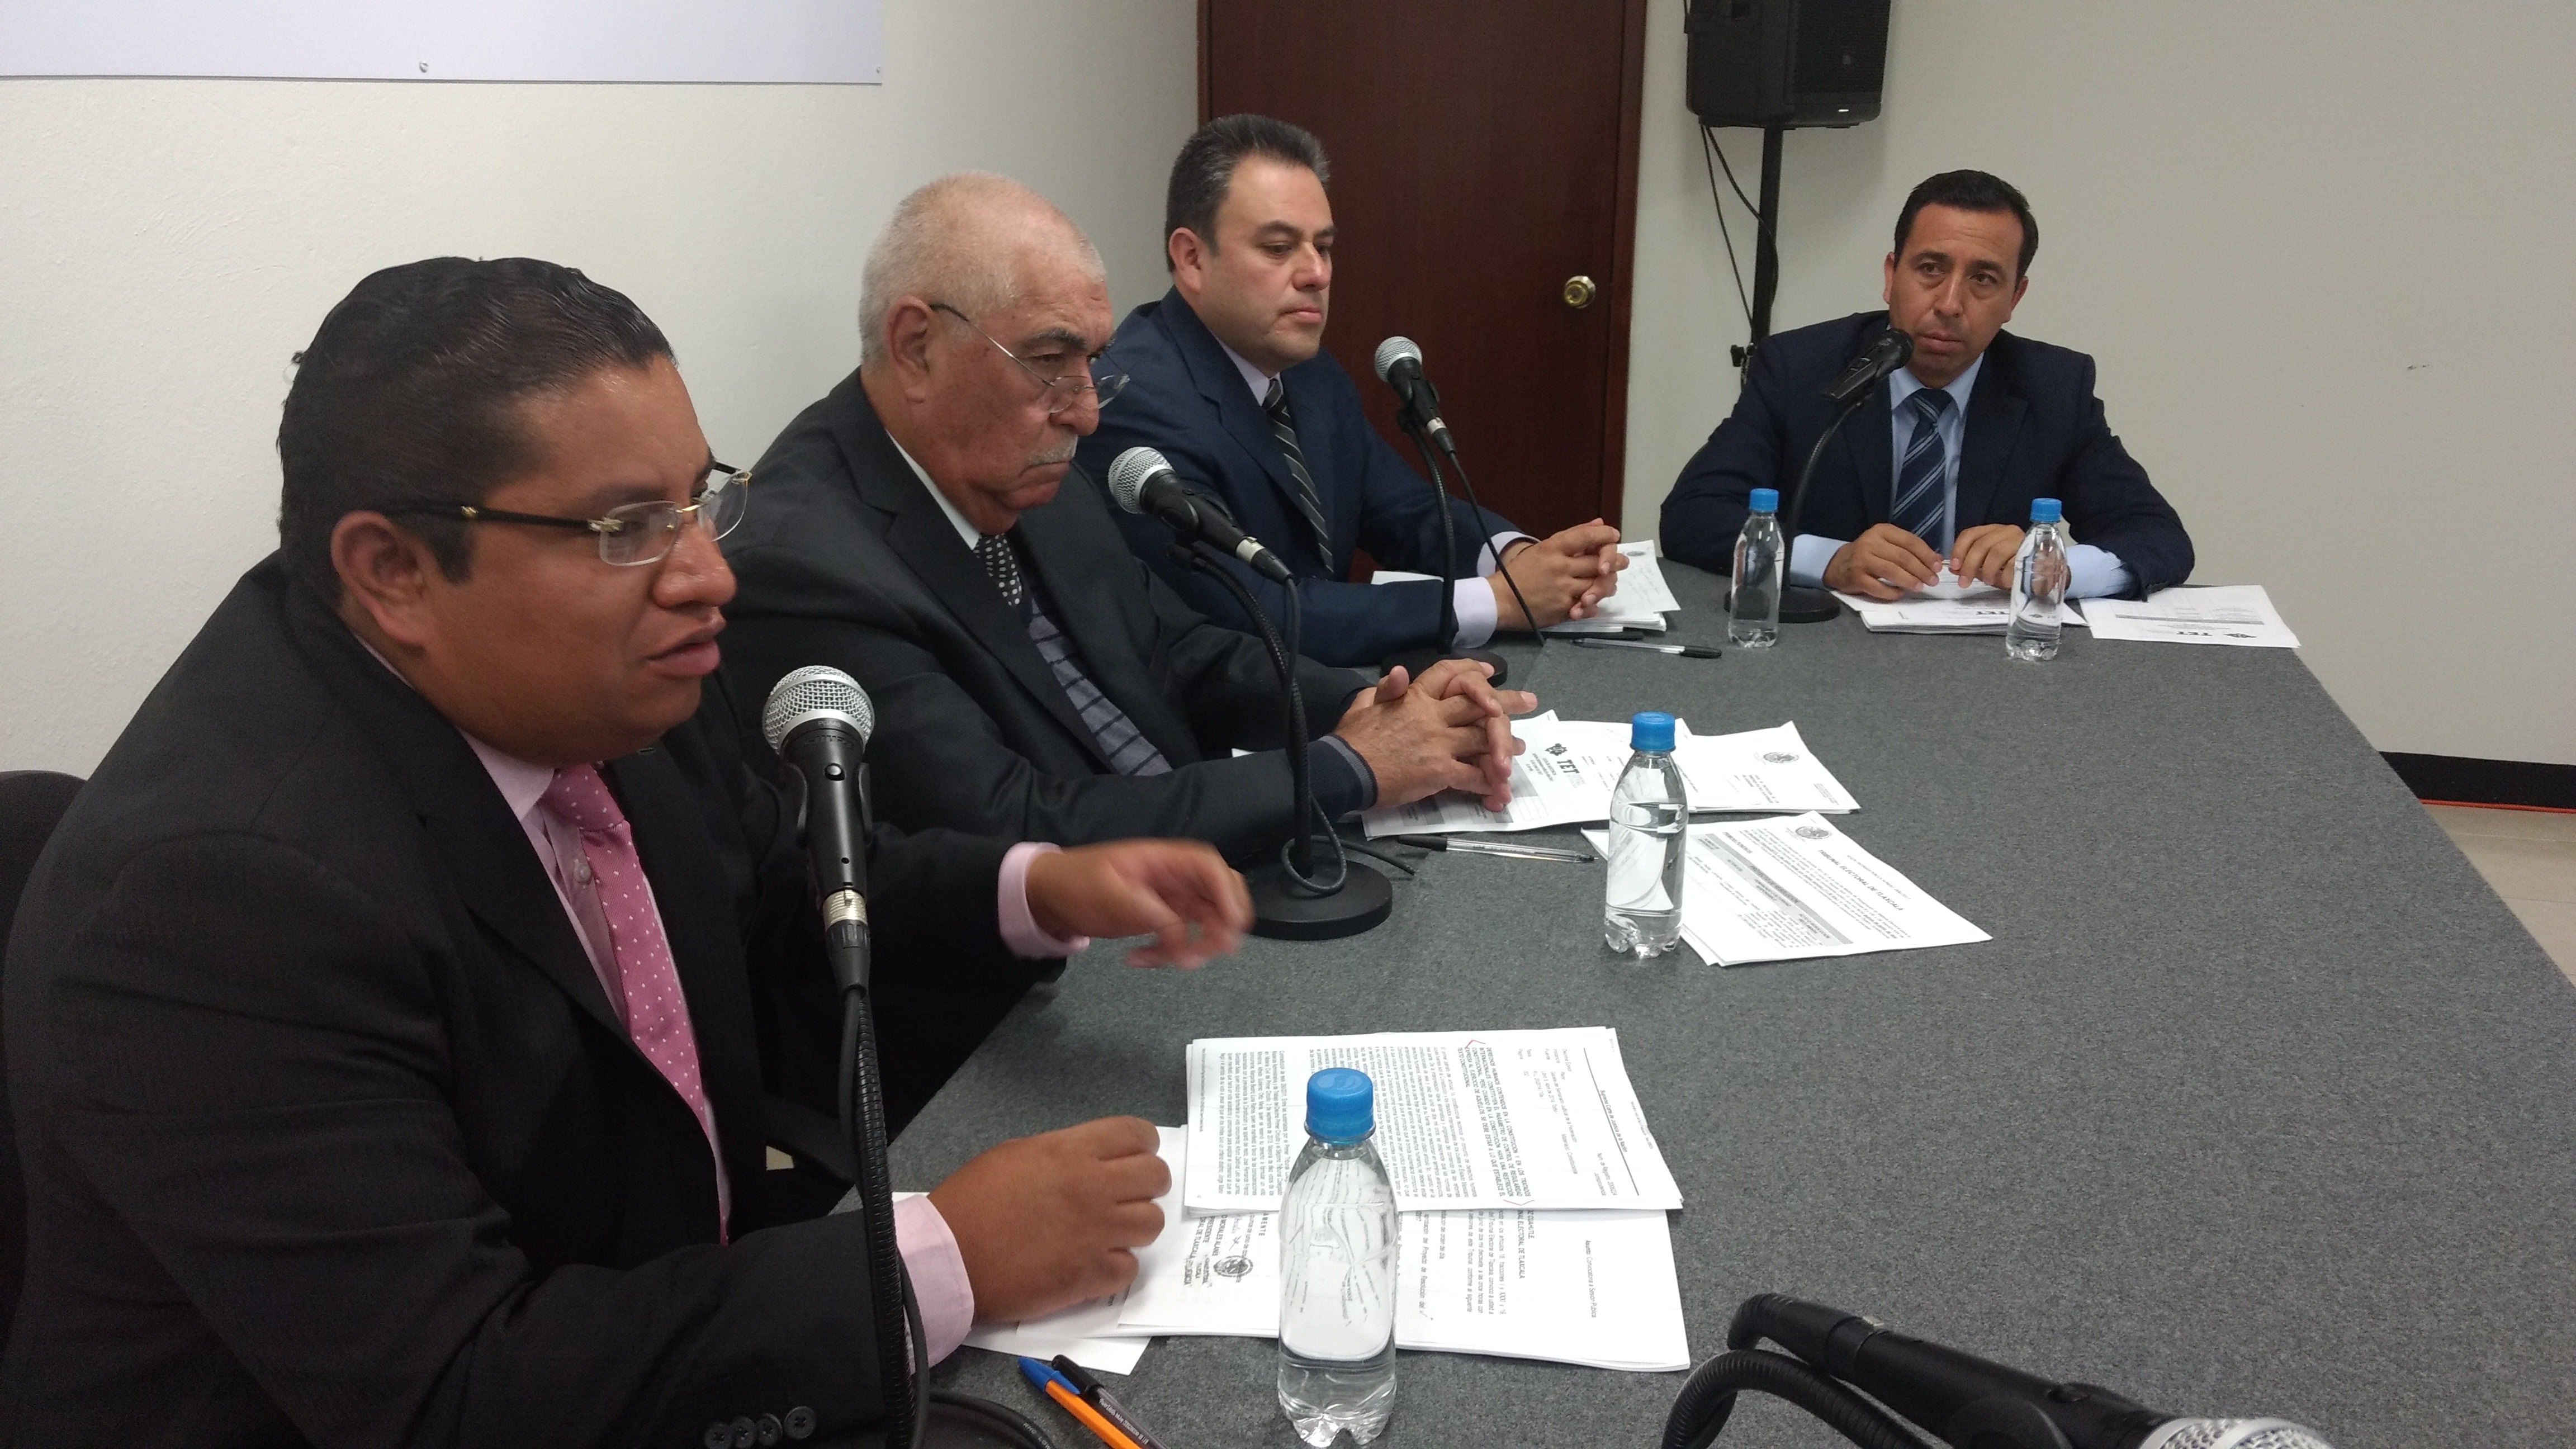 Confirma TET entrega de constancias de mayoría en Zacacalco Calpulalpan y La Joya Tlaxcala